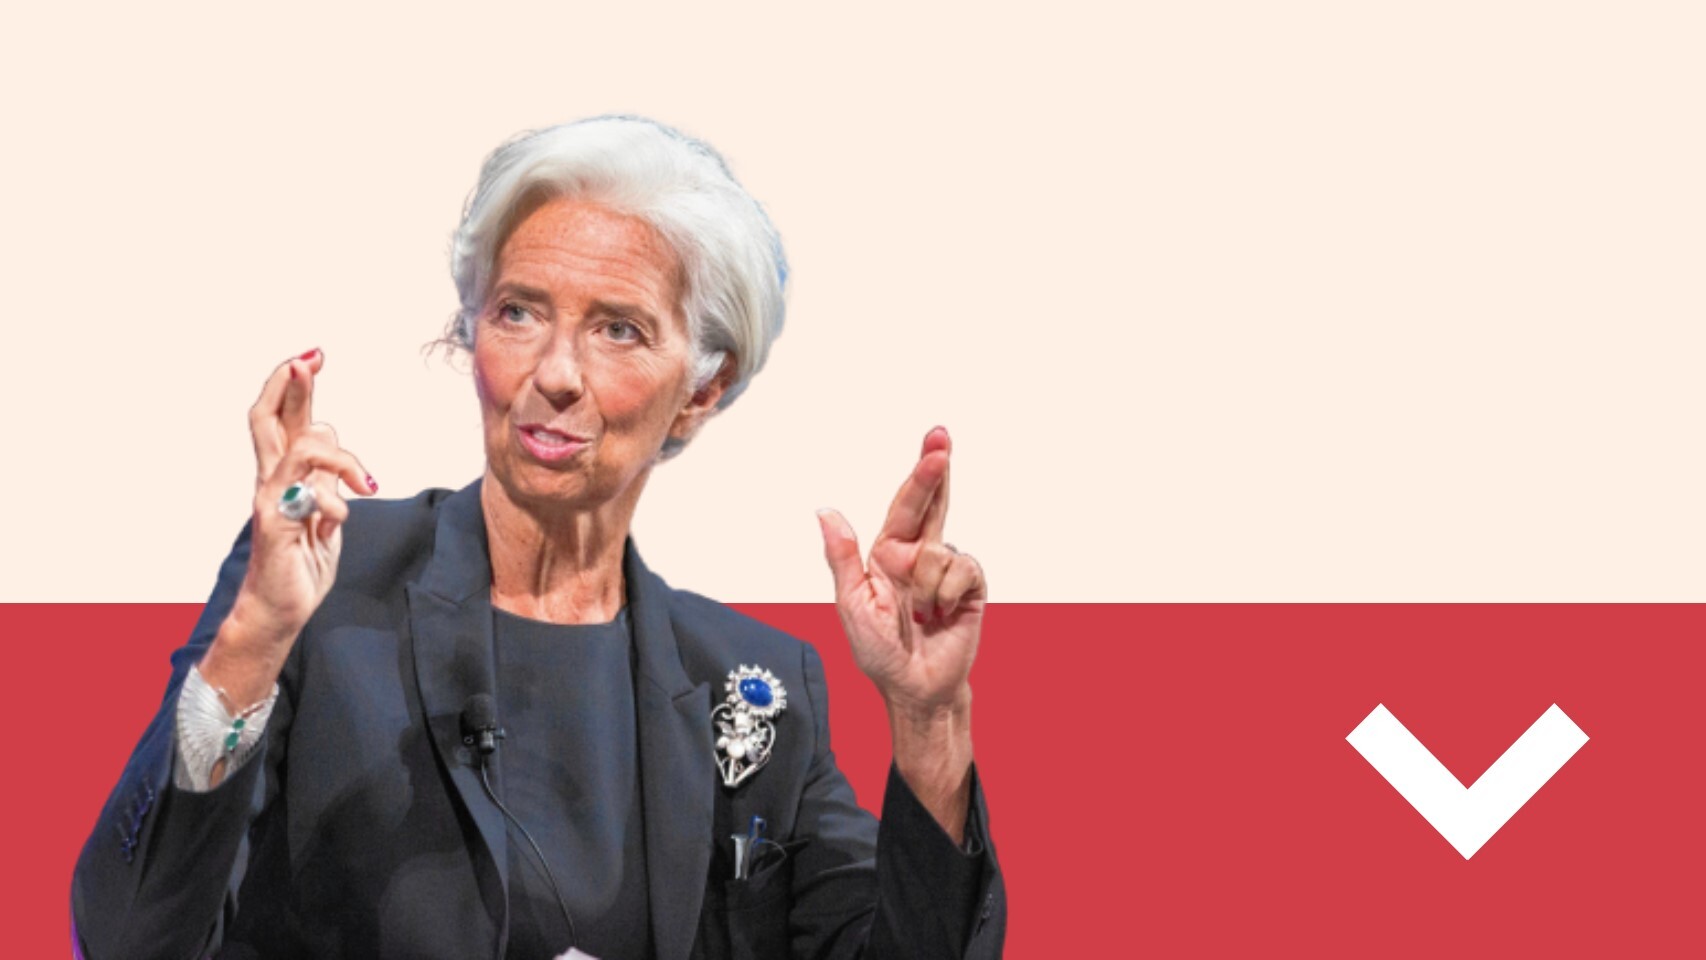 A LOS LEONES: Lagarde hunde los mercados con su inacción